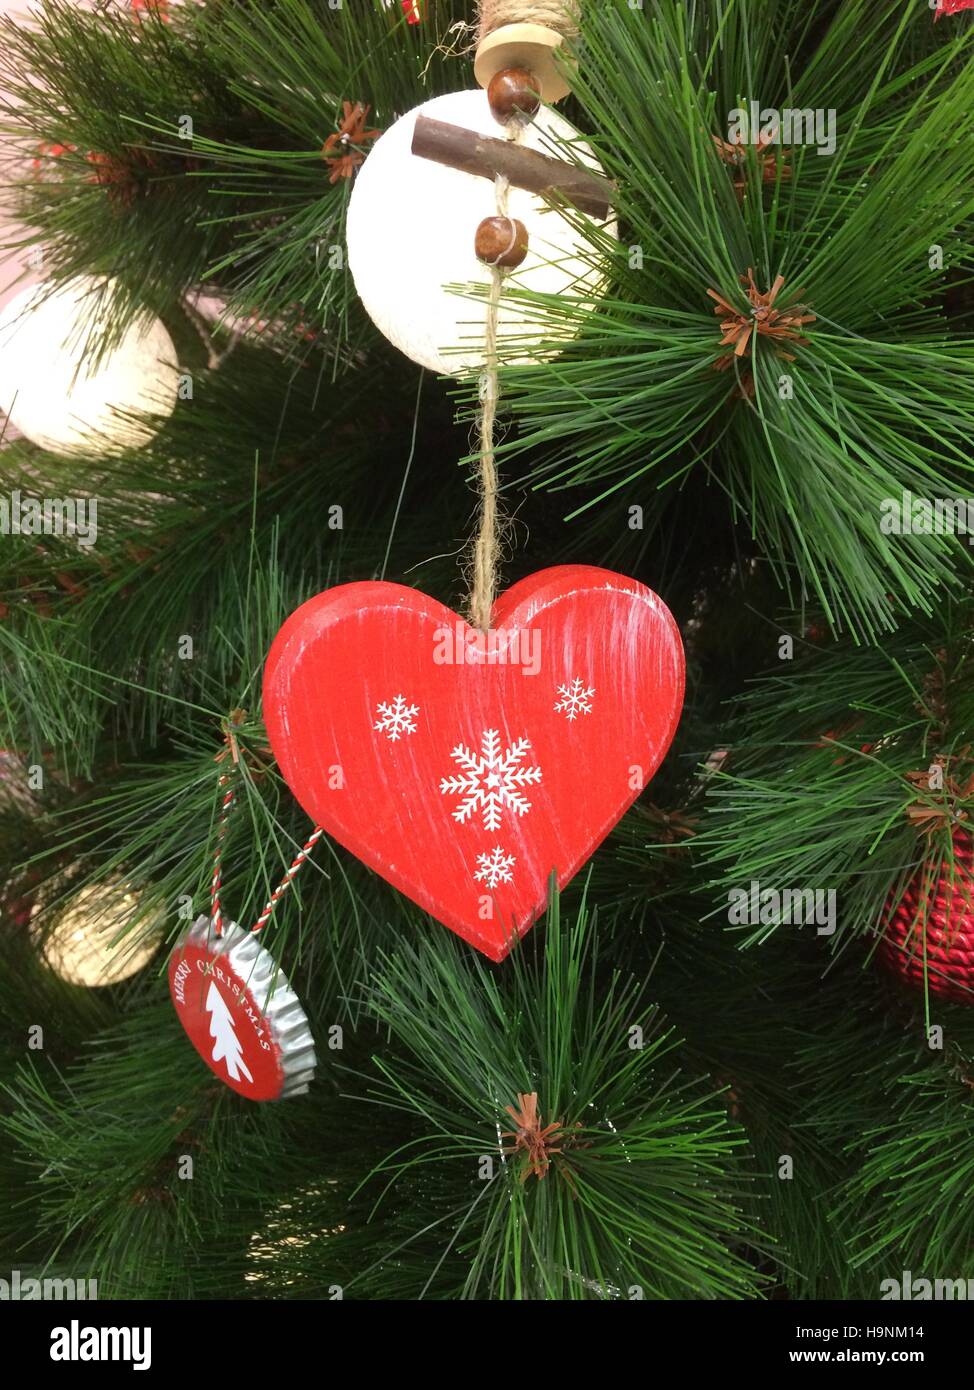 Coeur sur arbre de Noël - Joyeux Noël Décoration Banque D'Images